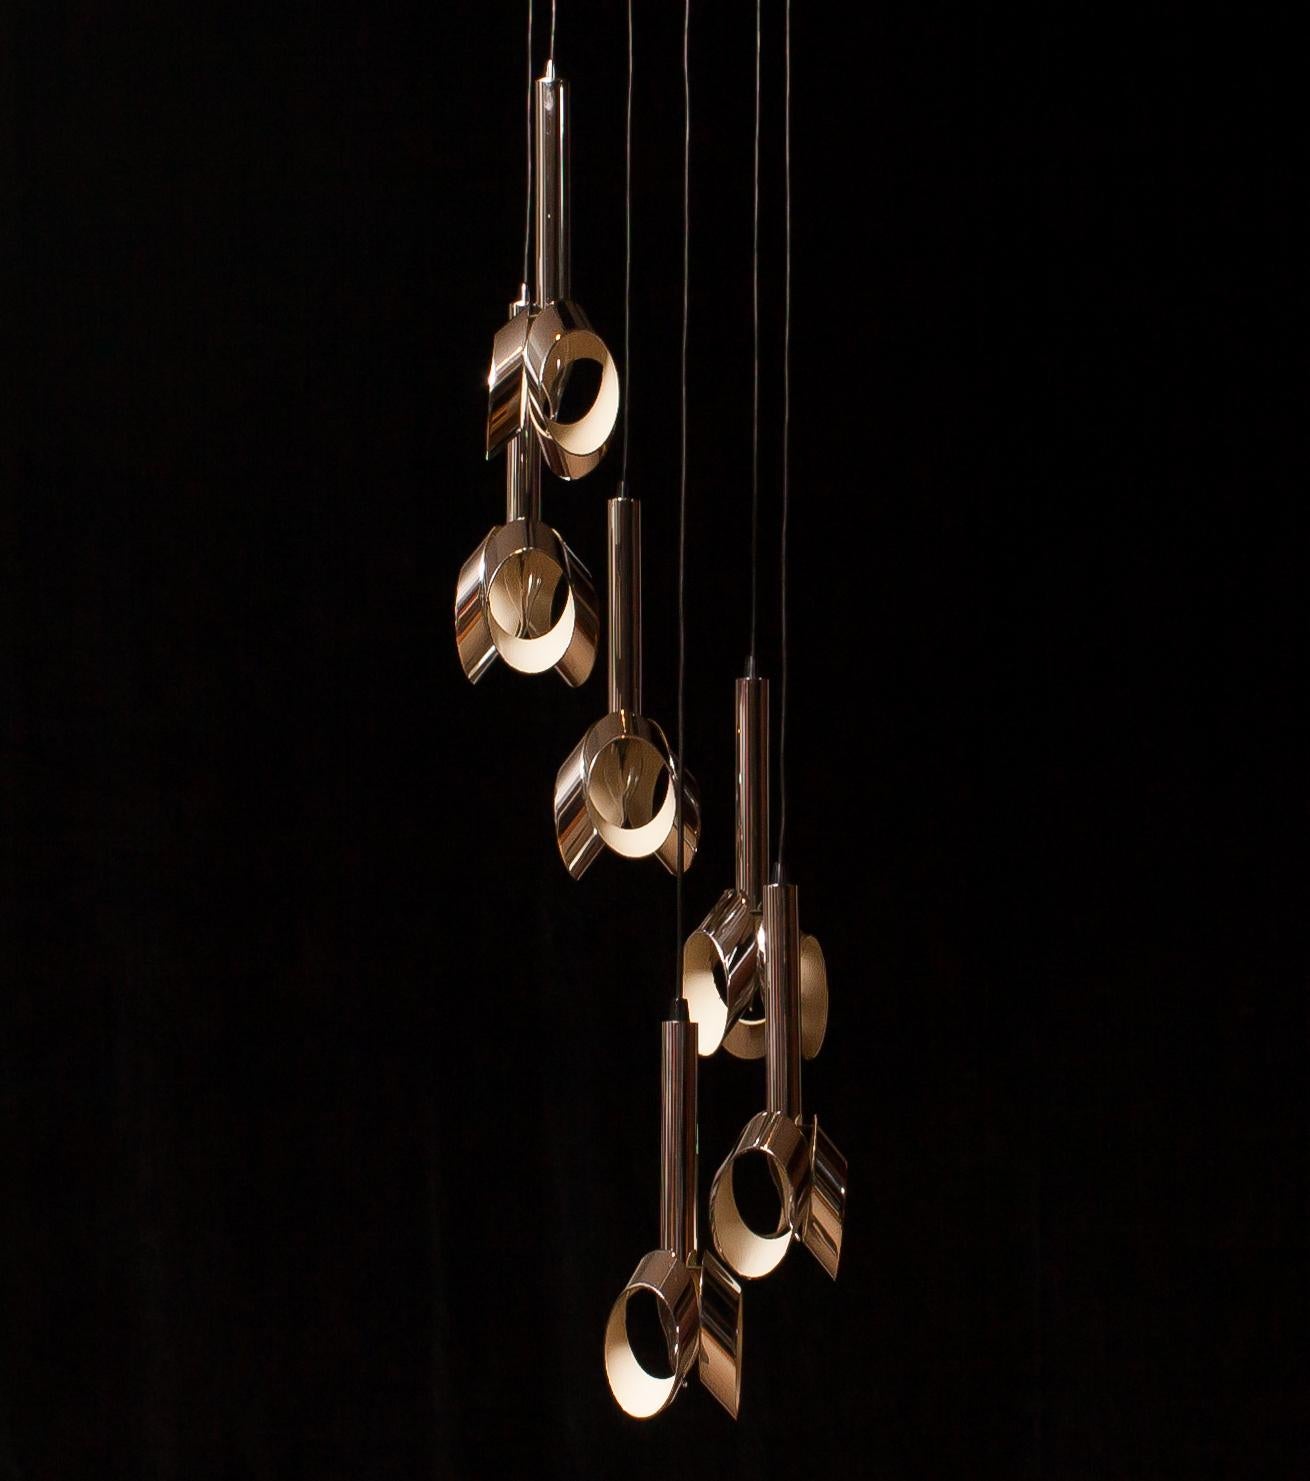 Mid-Century Modern 1960s, Chromed Metal Ceiling Lamp Chandelier by RAAK, Amsterdam